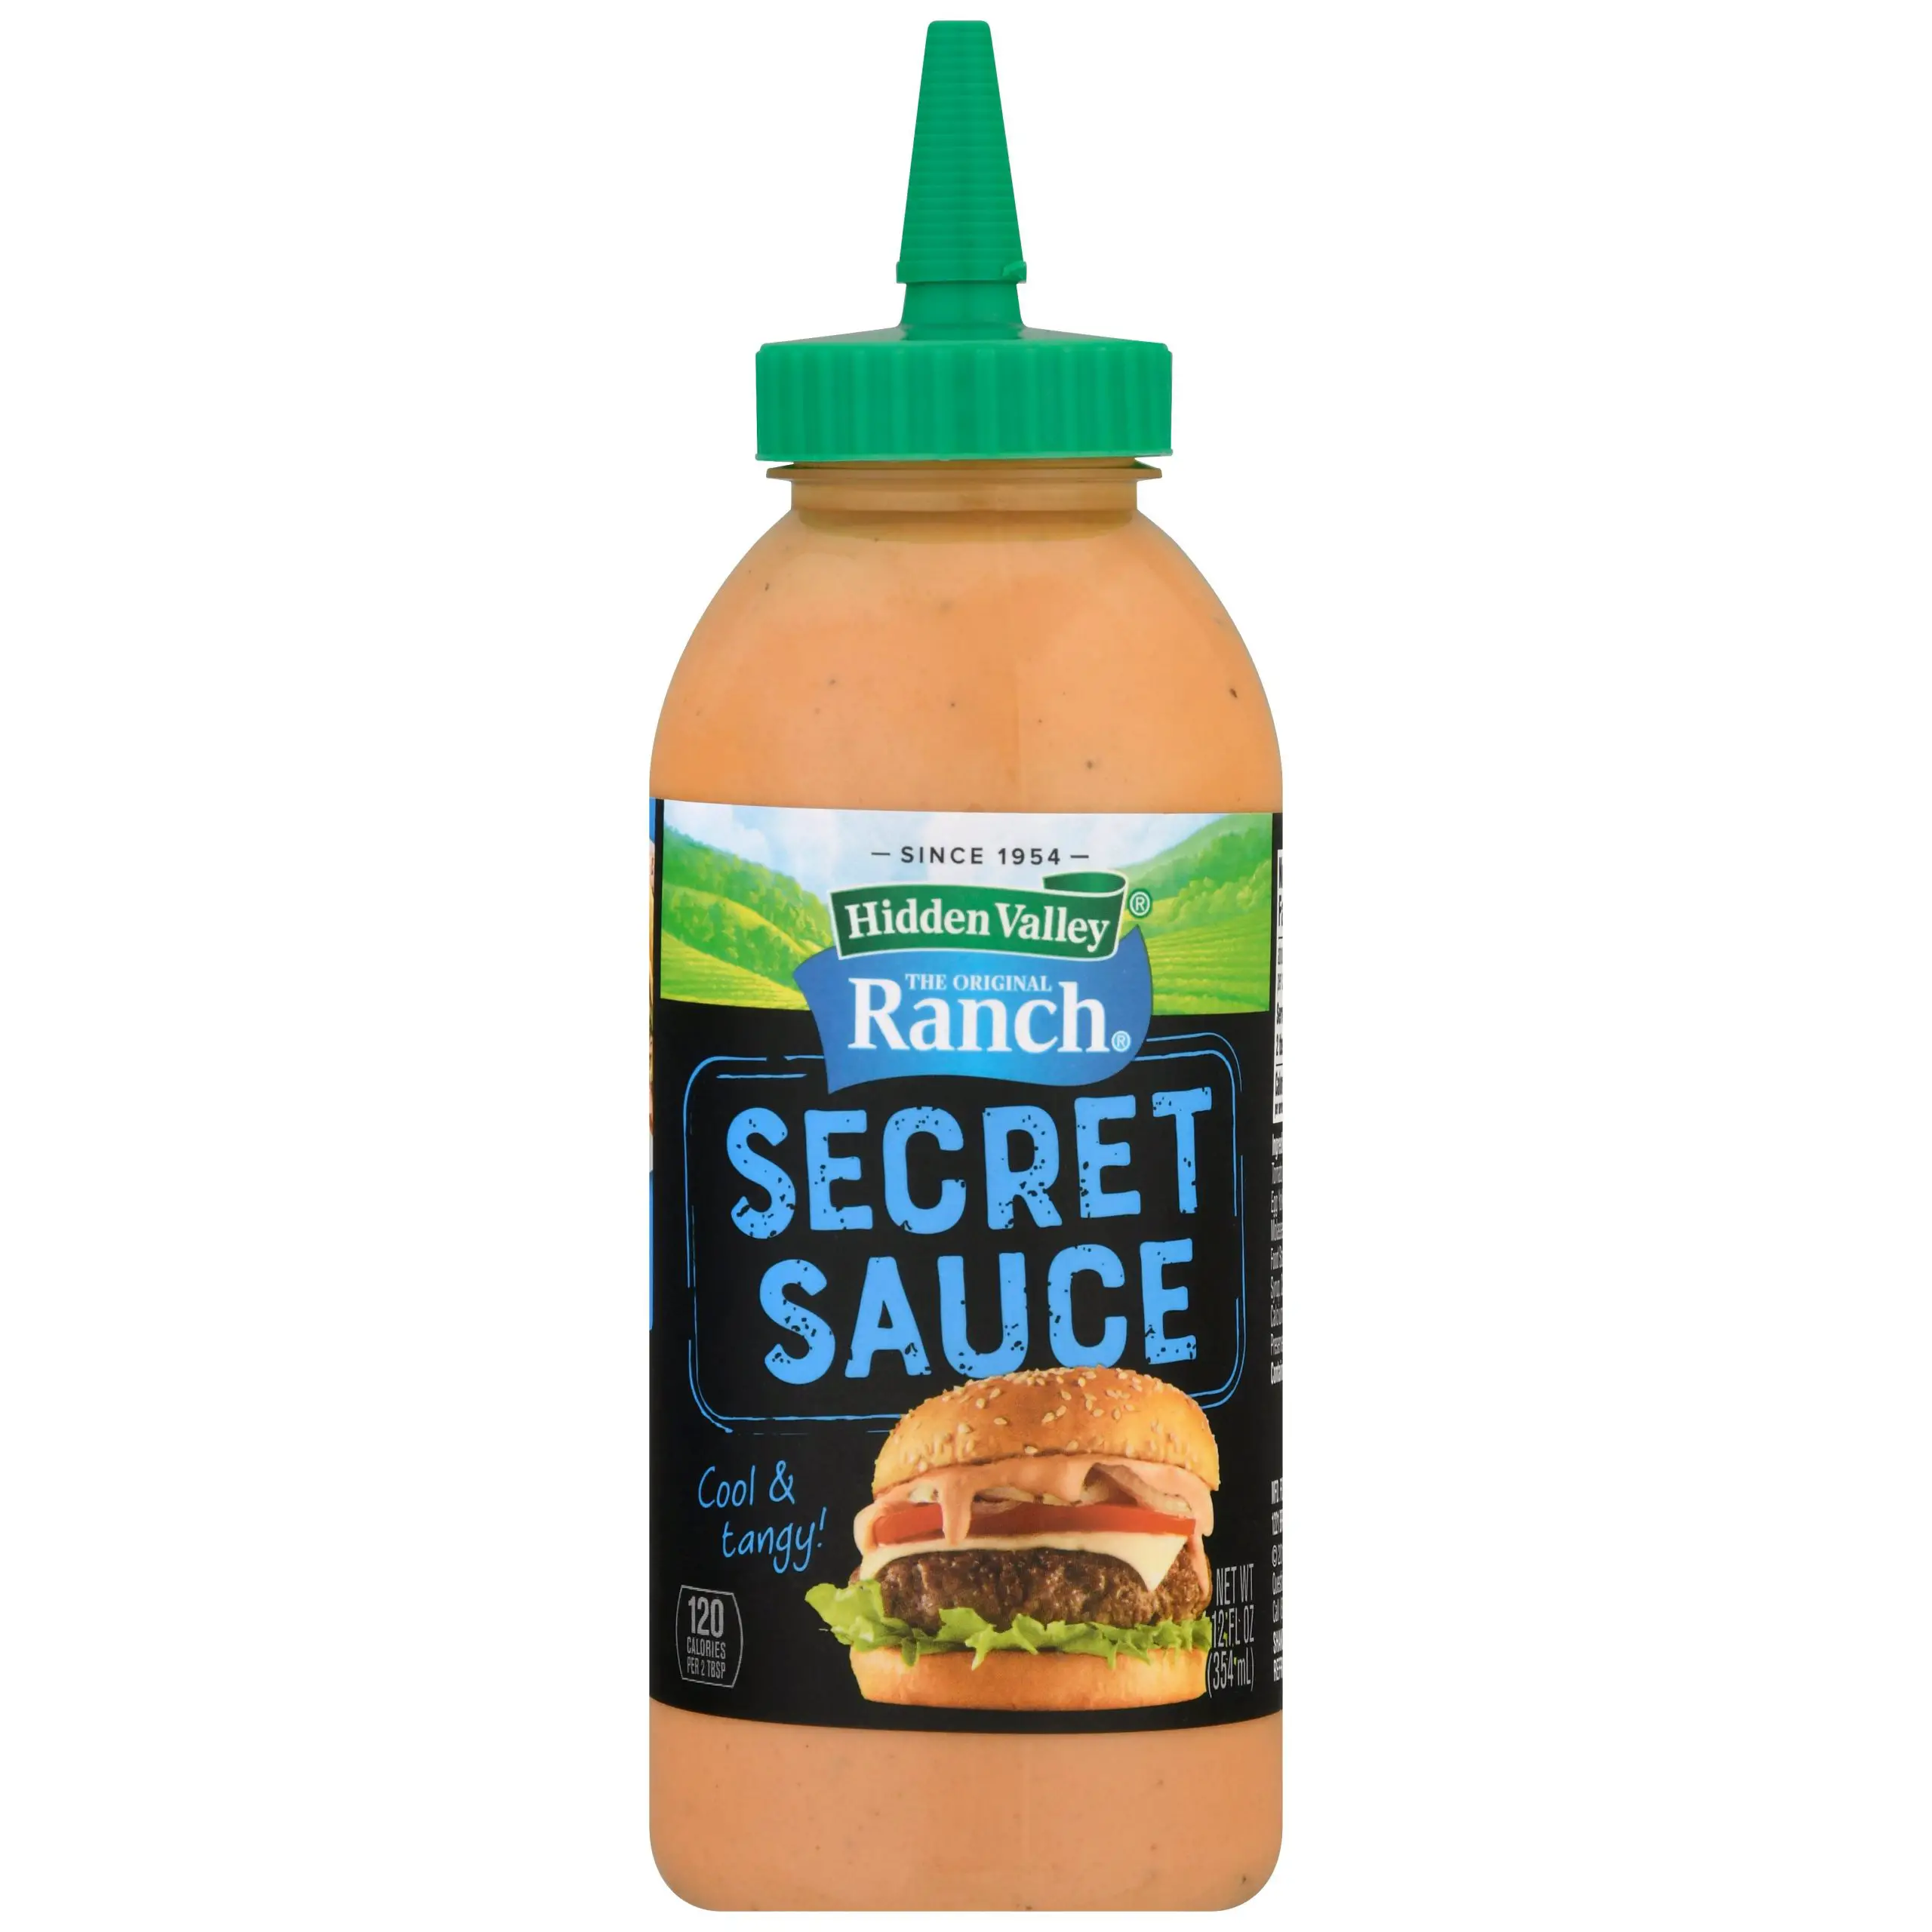 Hidden Valley Ranch Secret Sauce